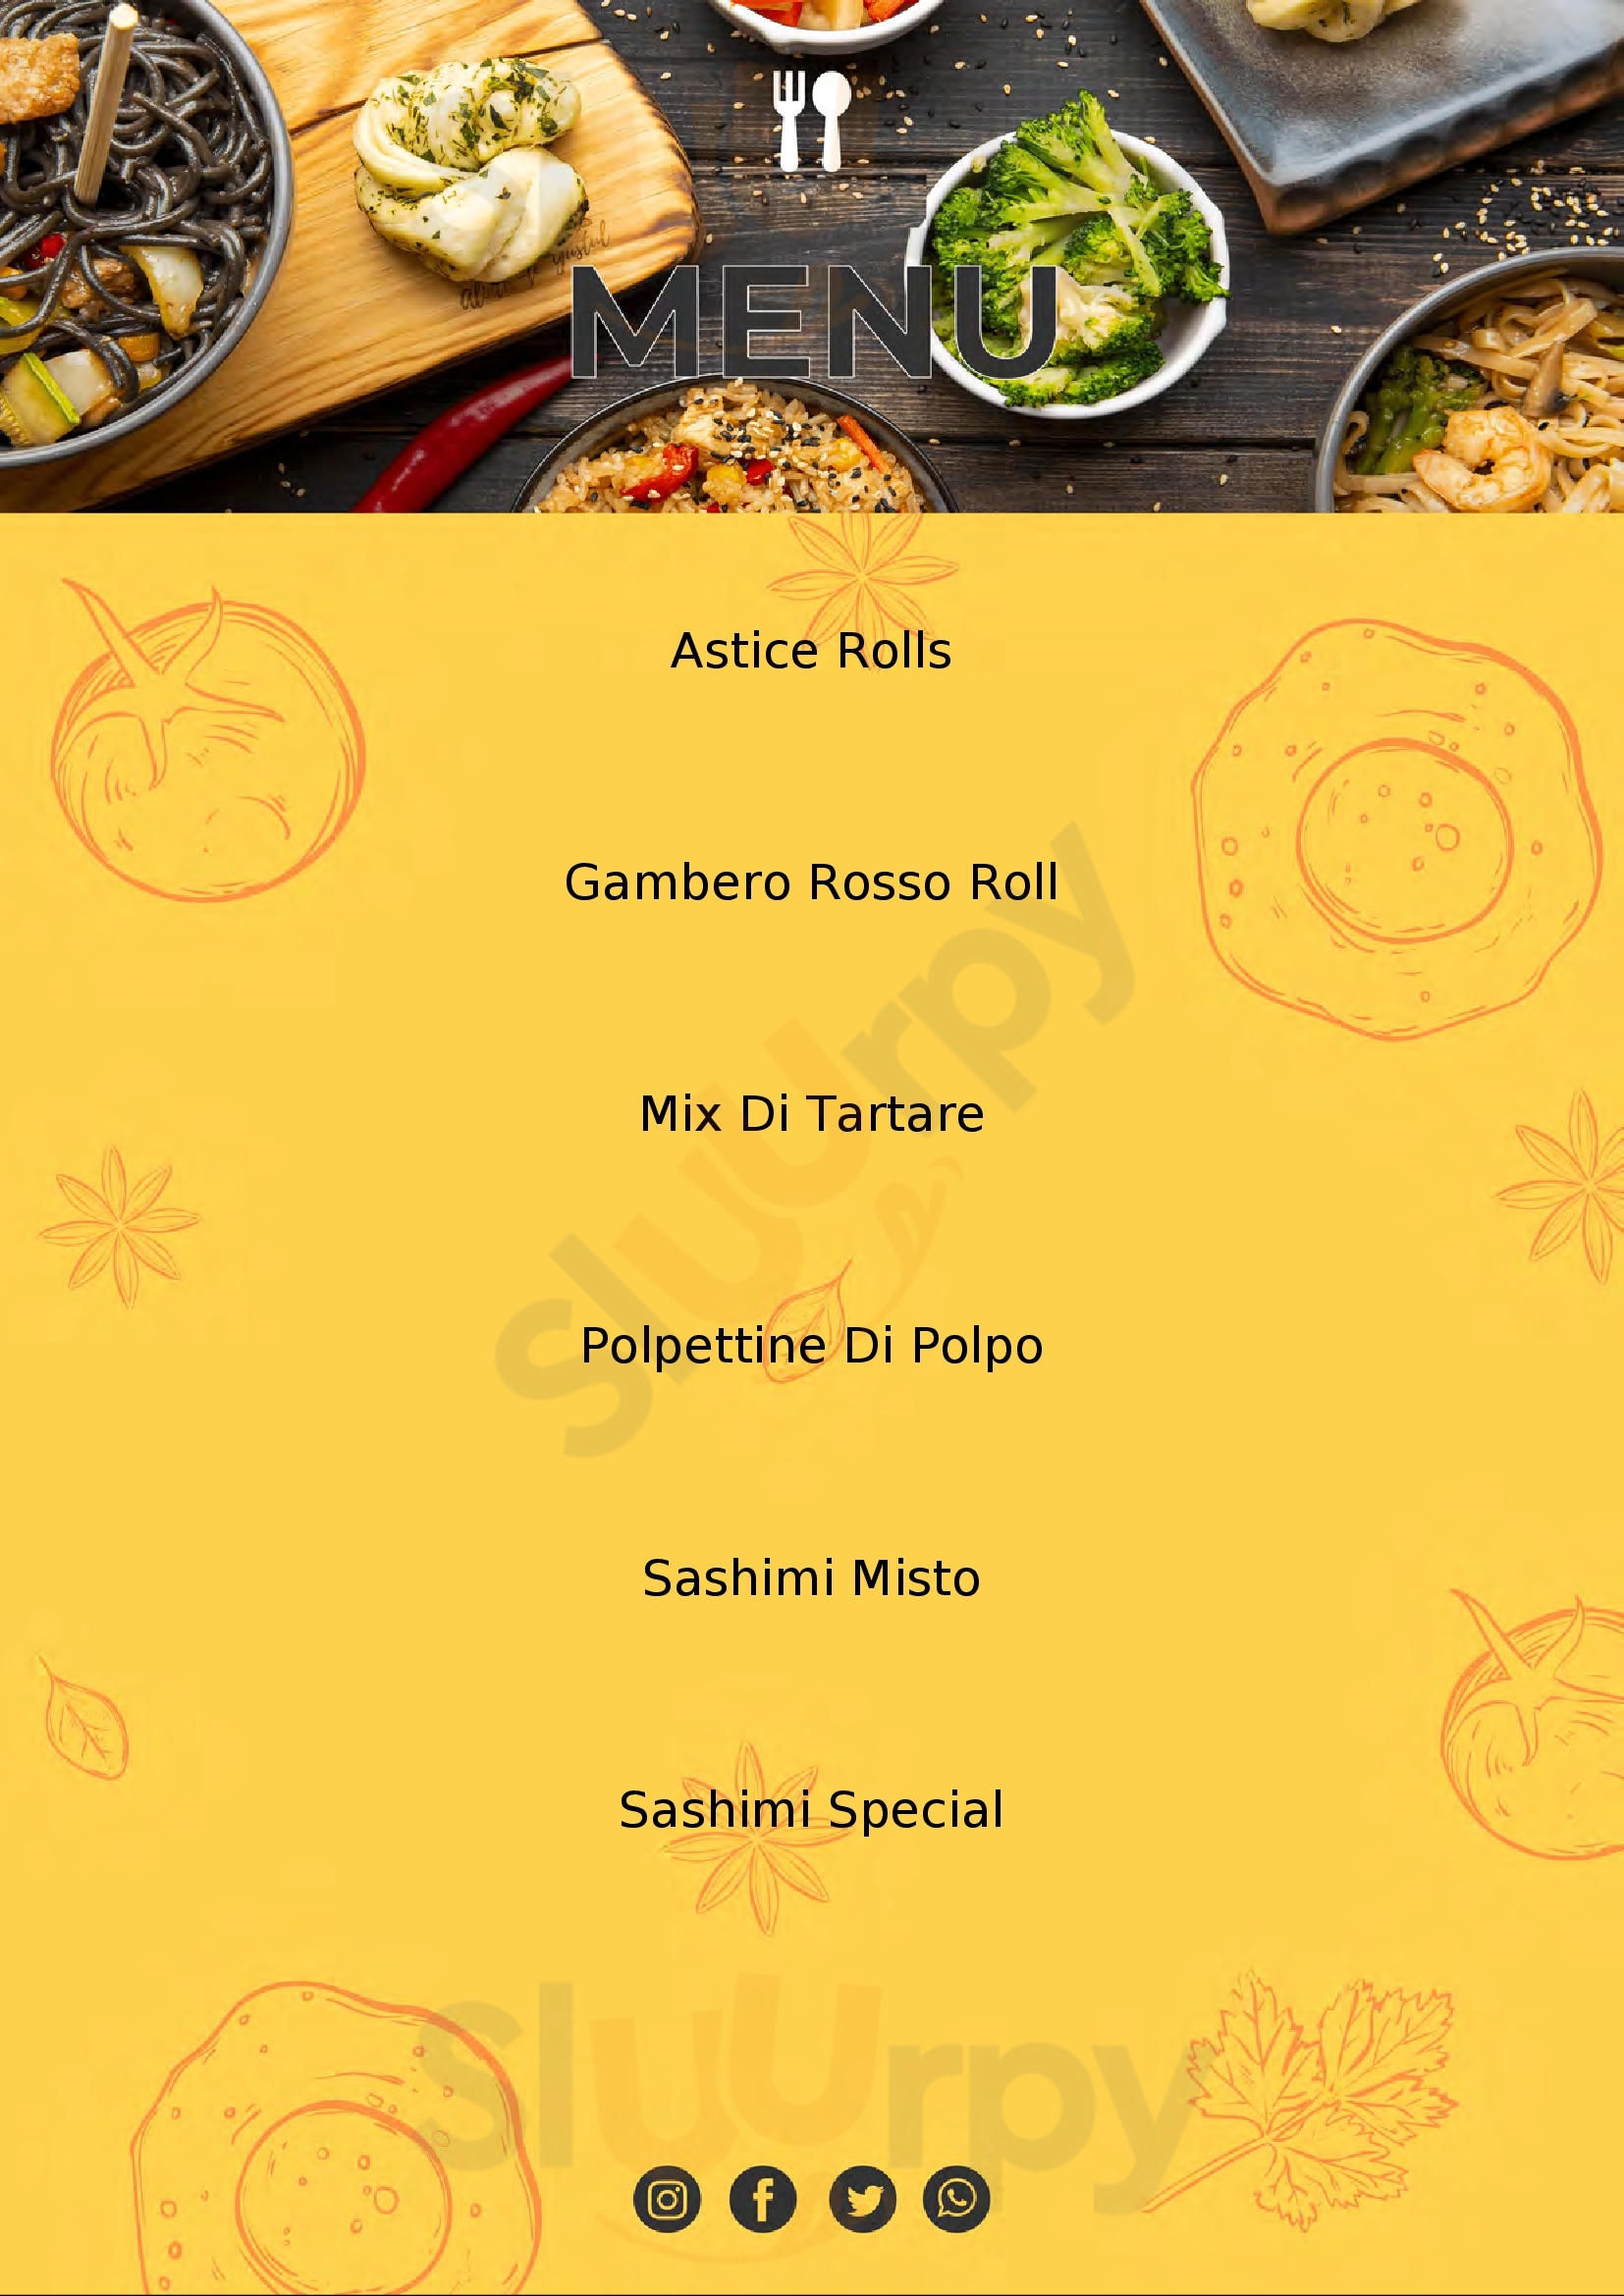 Kashima Sushi Milano menù 1 pagina